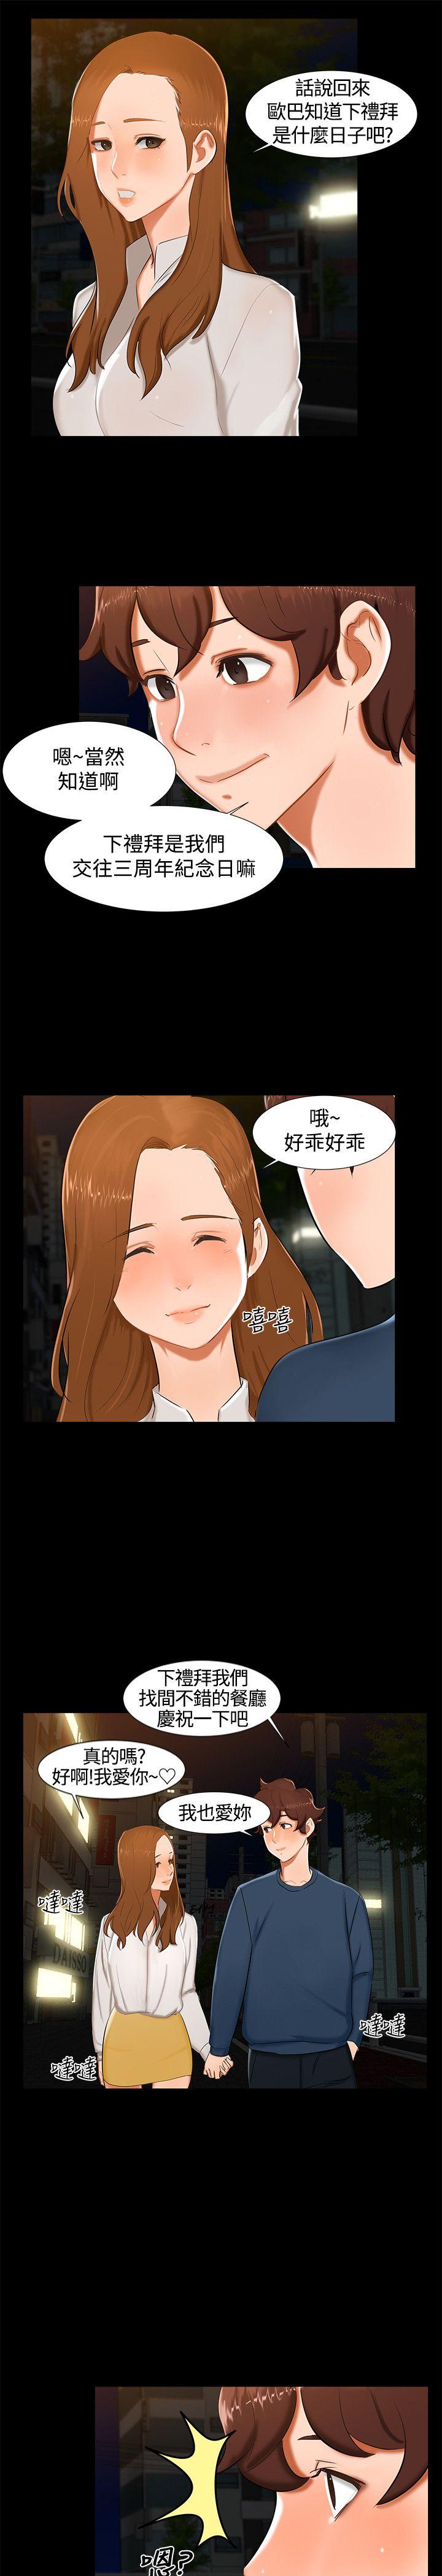 韩国污漫画 無眠之夜 第13话 19